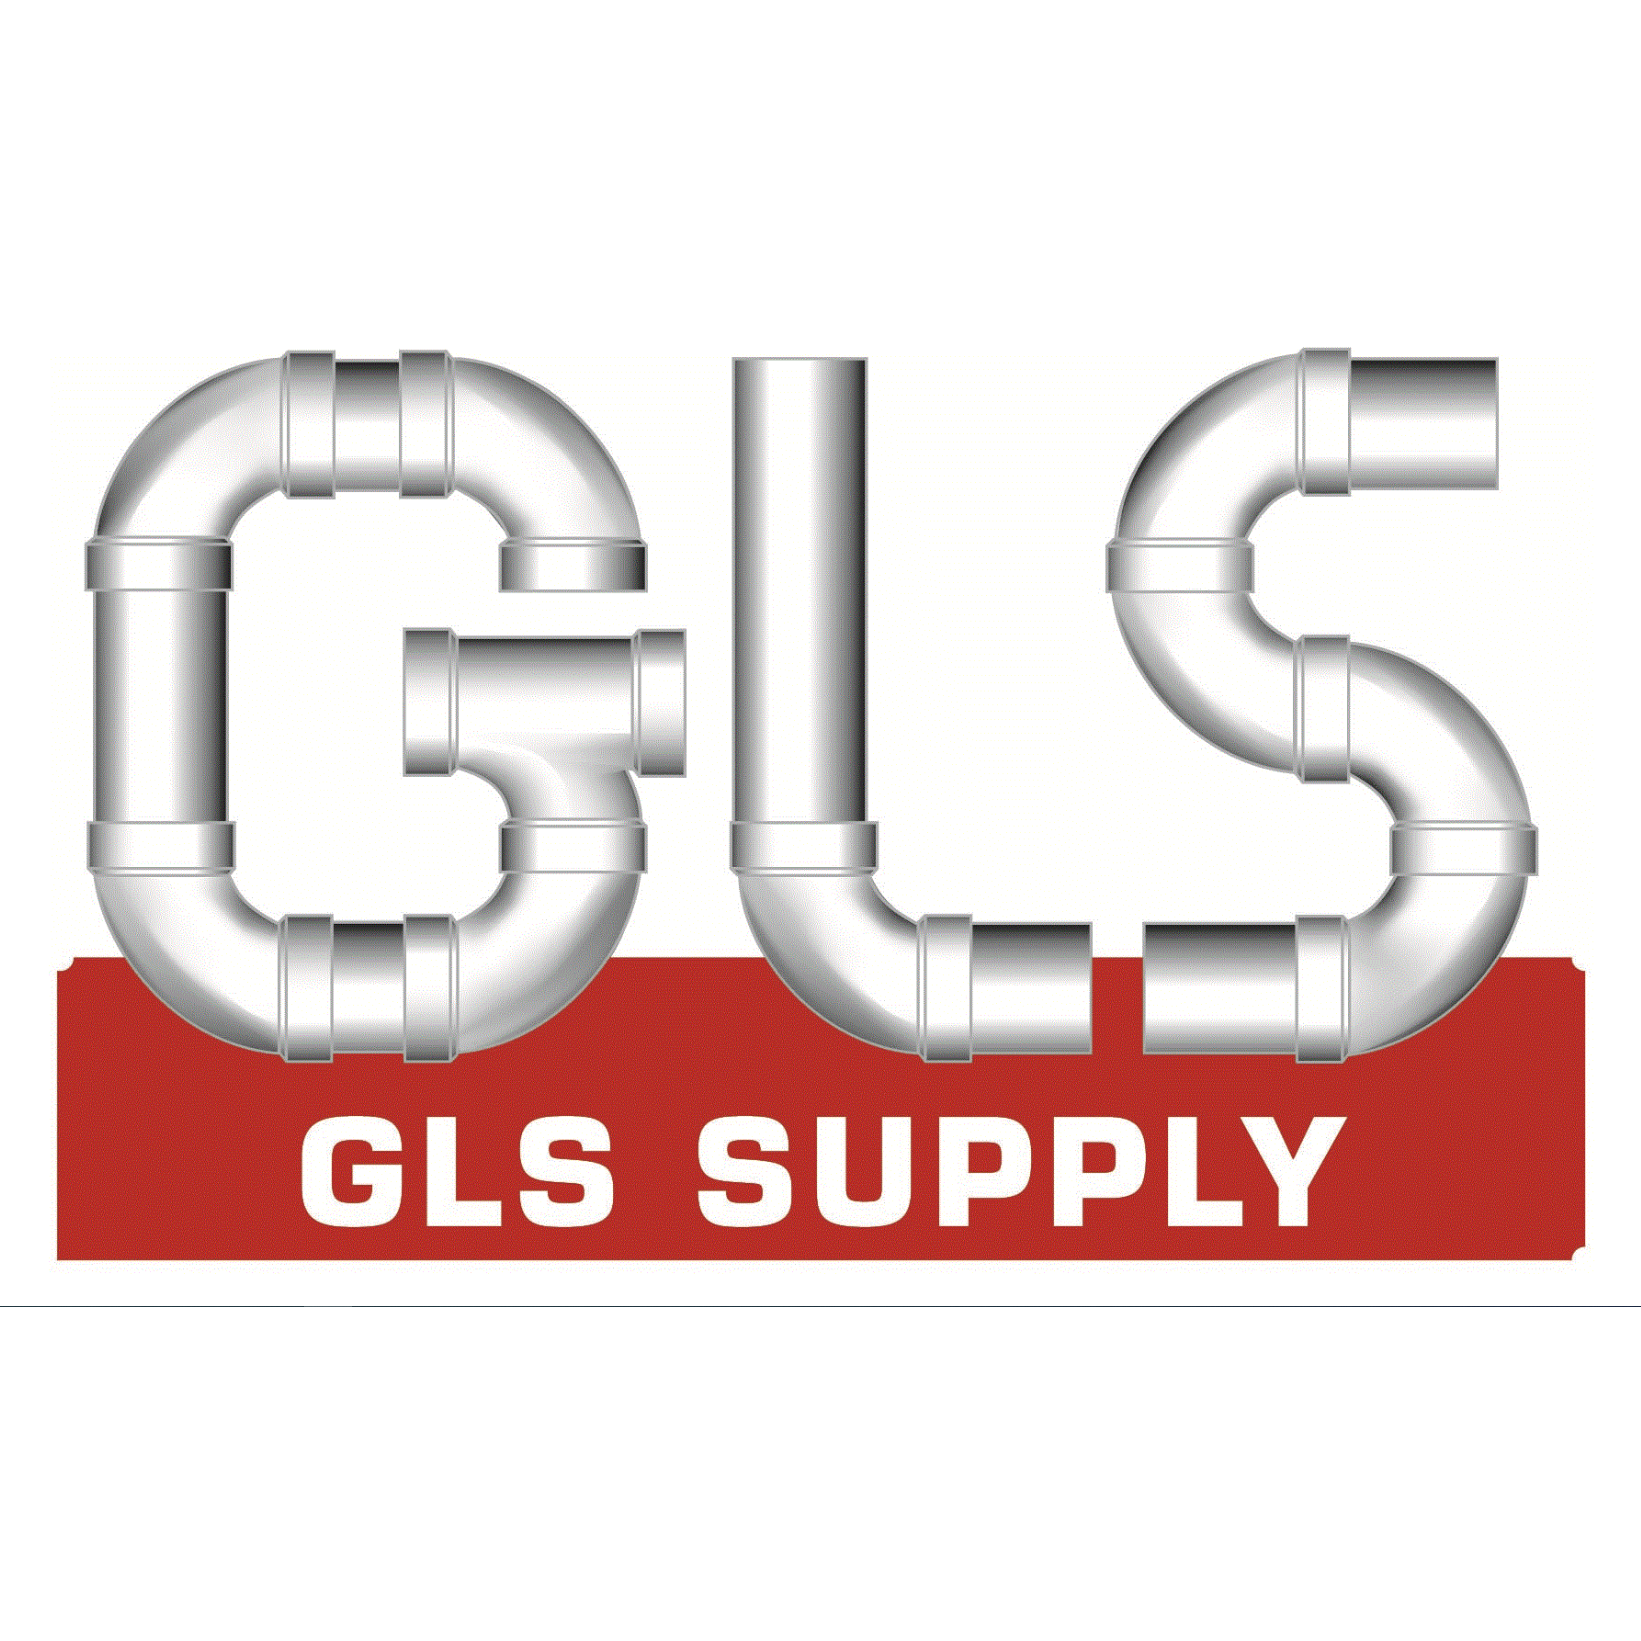 GLS Supply - Cullman, AL 35055 - (256)775-0411 | ShowMeLocal.com